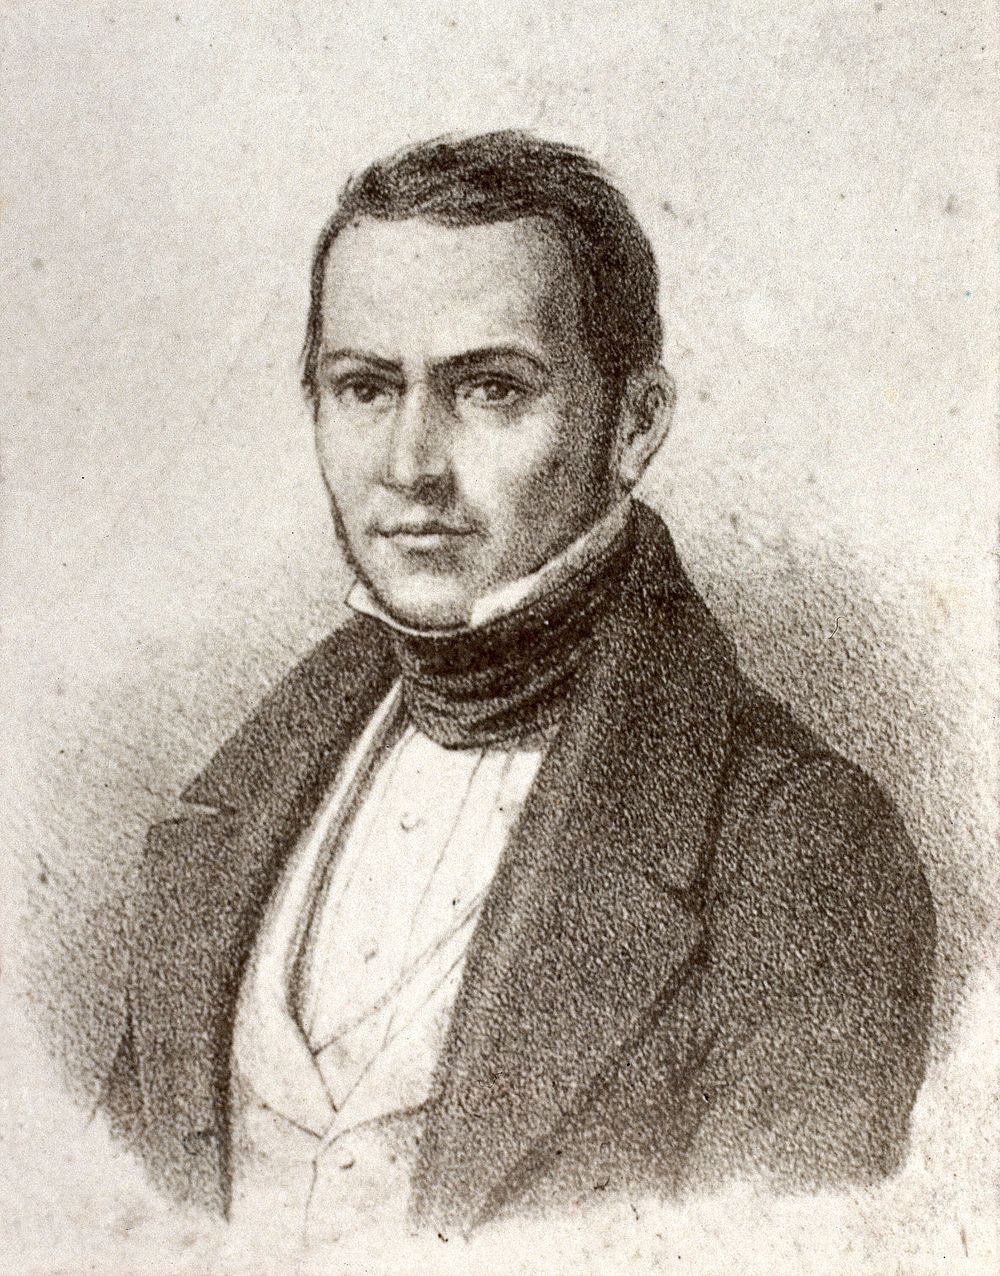 Pedro Escobedo. Photograph after a lithograph.